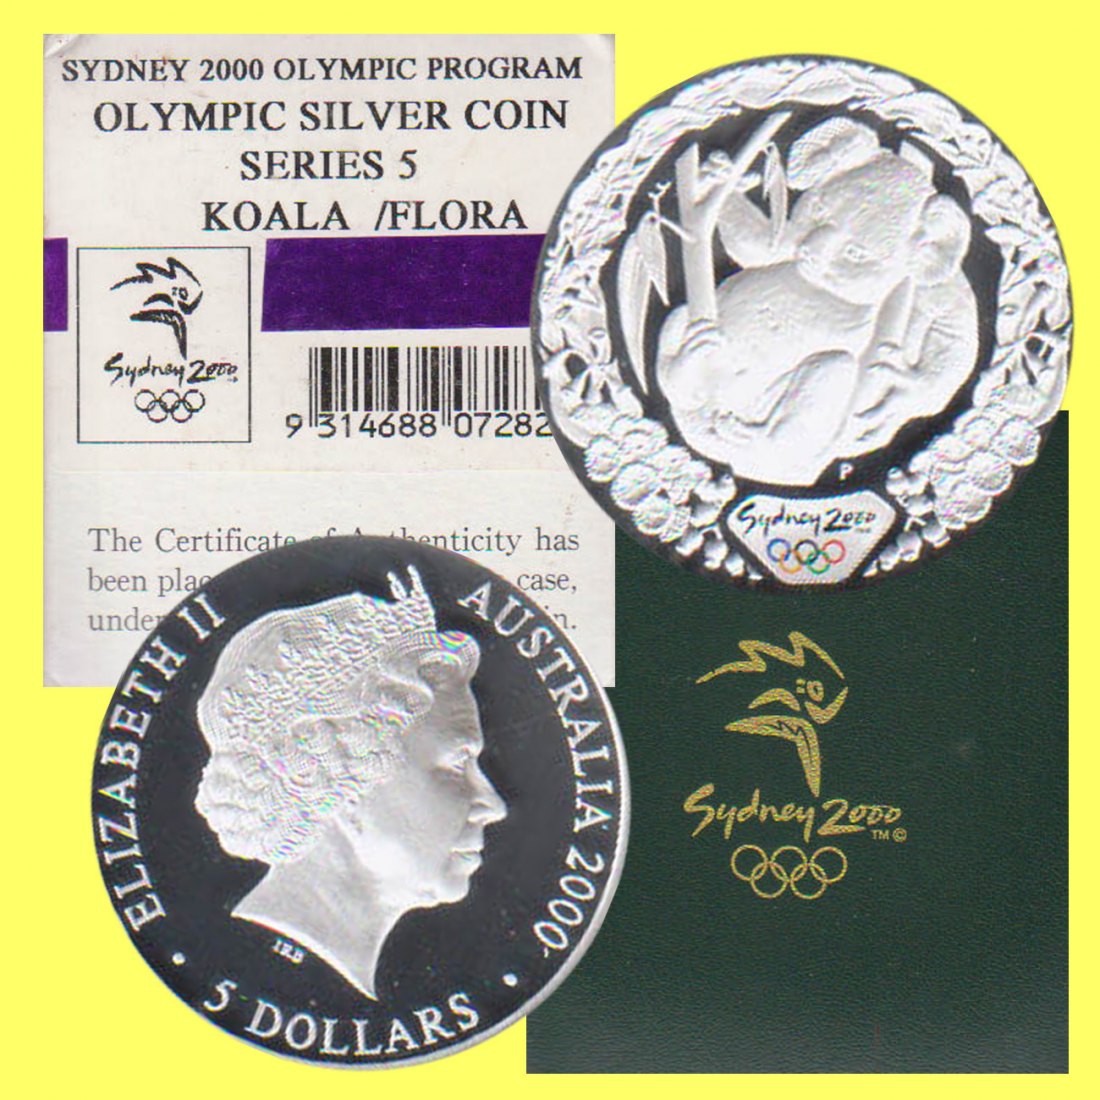  Australien 5$-Farb-Silbermünze *Koala - Olymp. 2000 in Sydney* 2000 *PP* 1oz Silber   